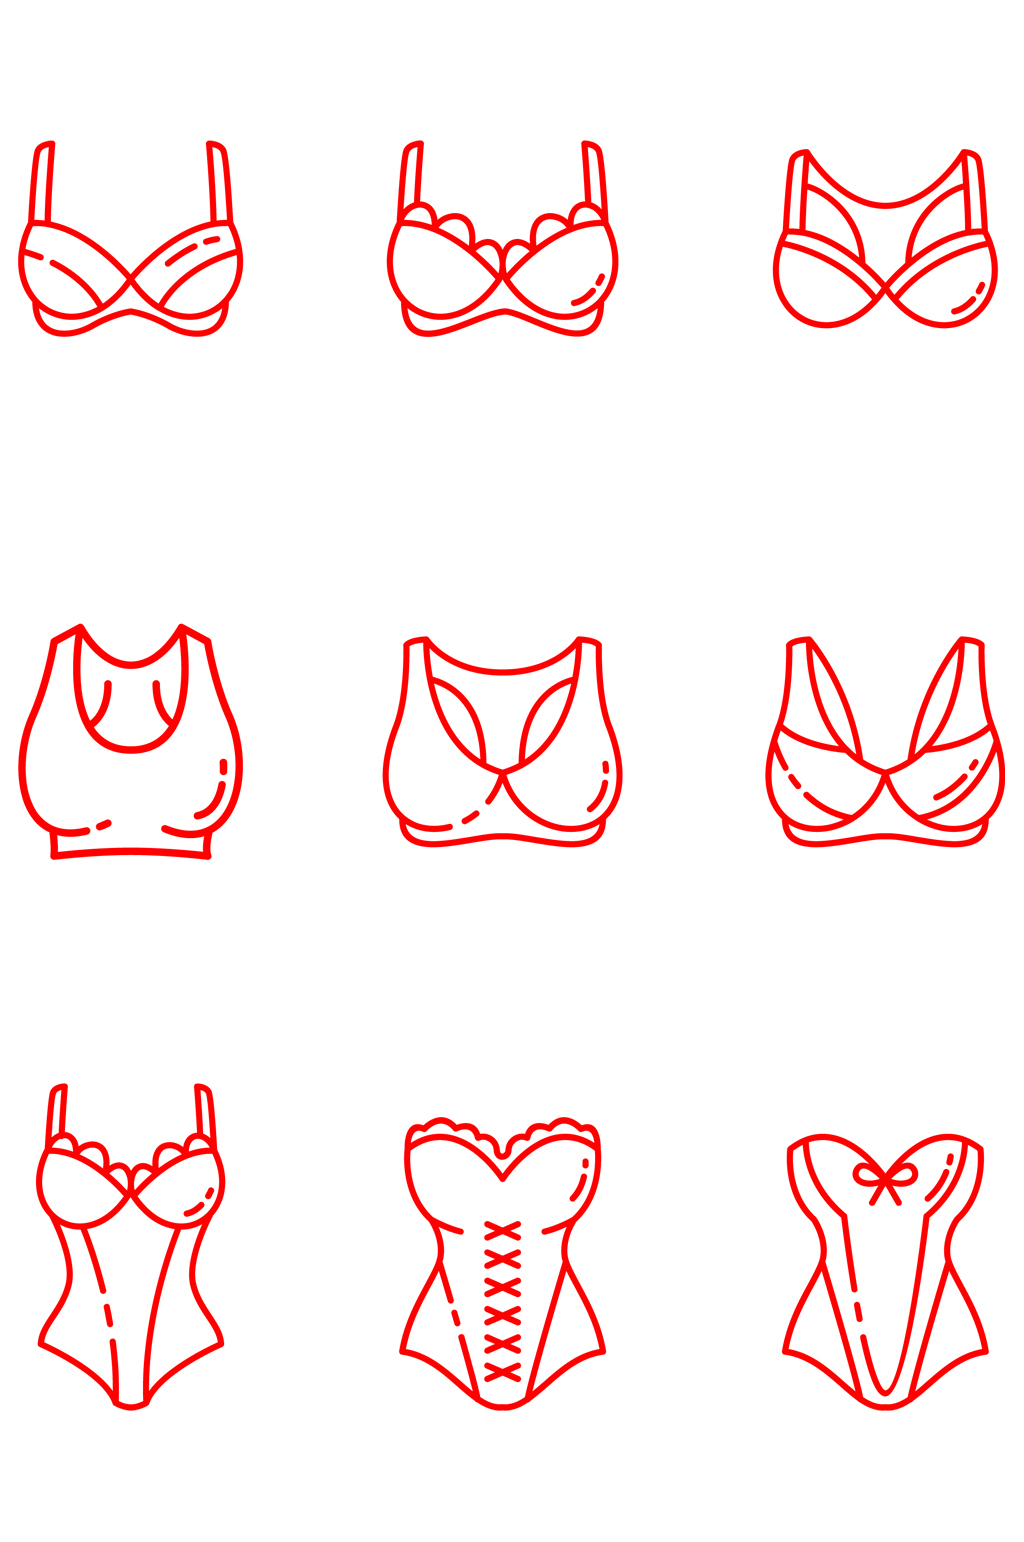 女性裹胸运动衣胸罩图标免扣元素